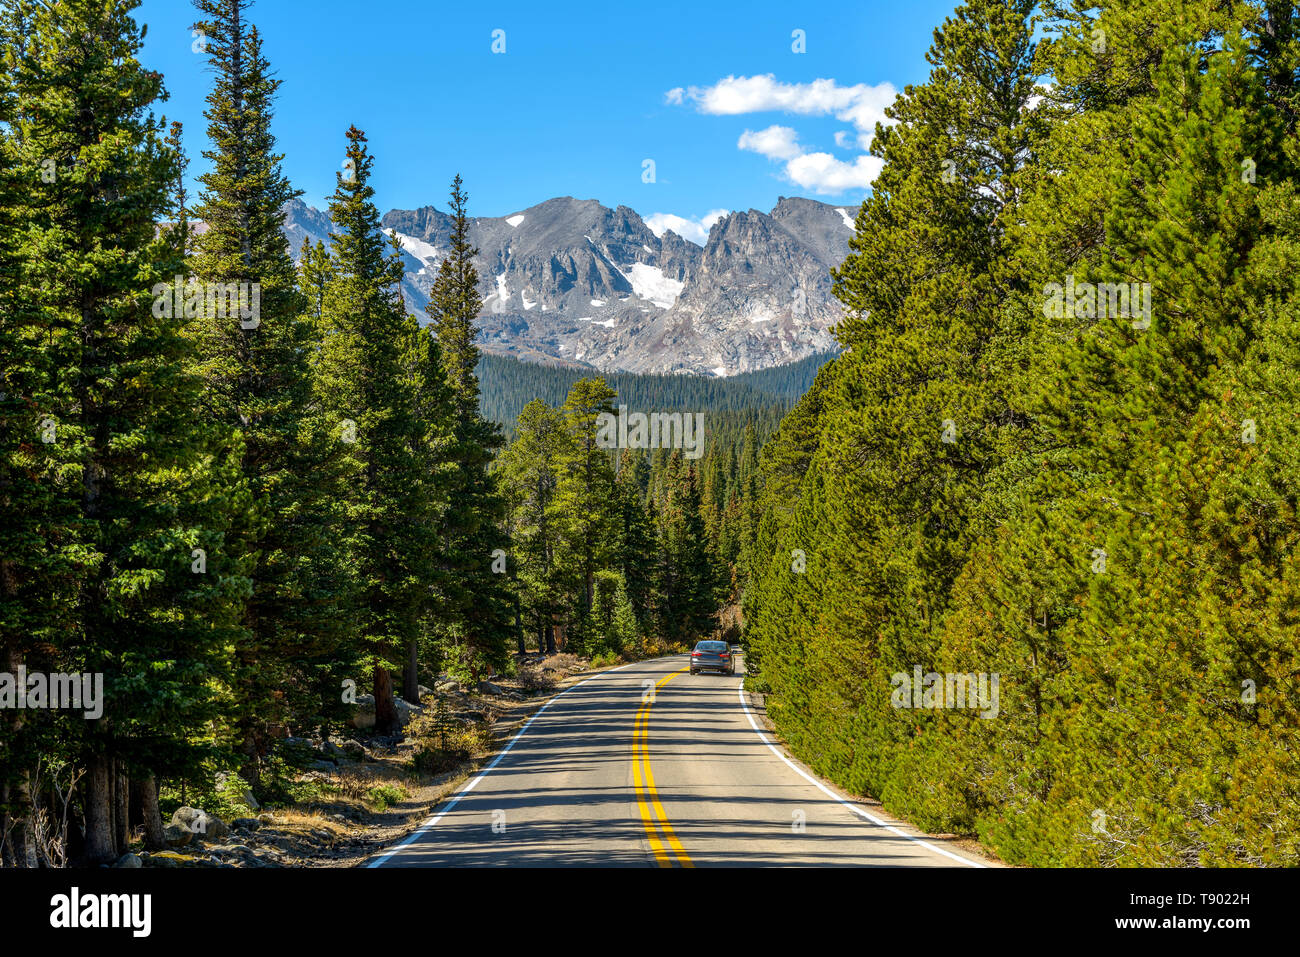 Route de montagne - une route de montagne serpentant dans une forêt dense, avec des pics et des Glaciers indiens s'en arrière-plan. Dans le Colorado, aux Etats-Unis. Banque D'Images